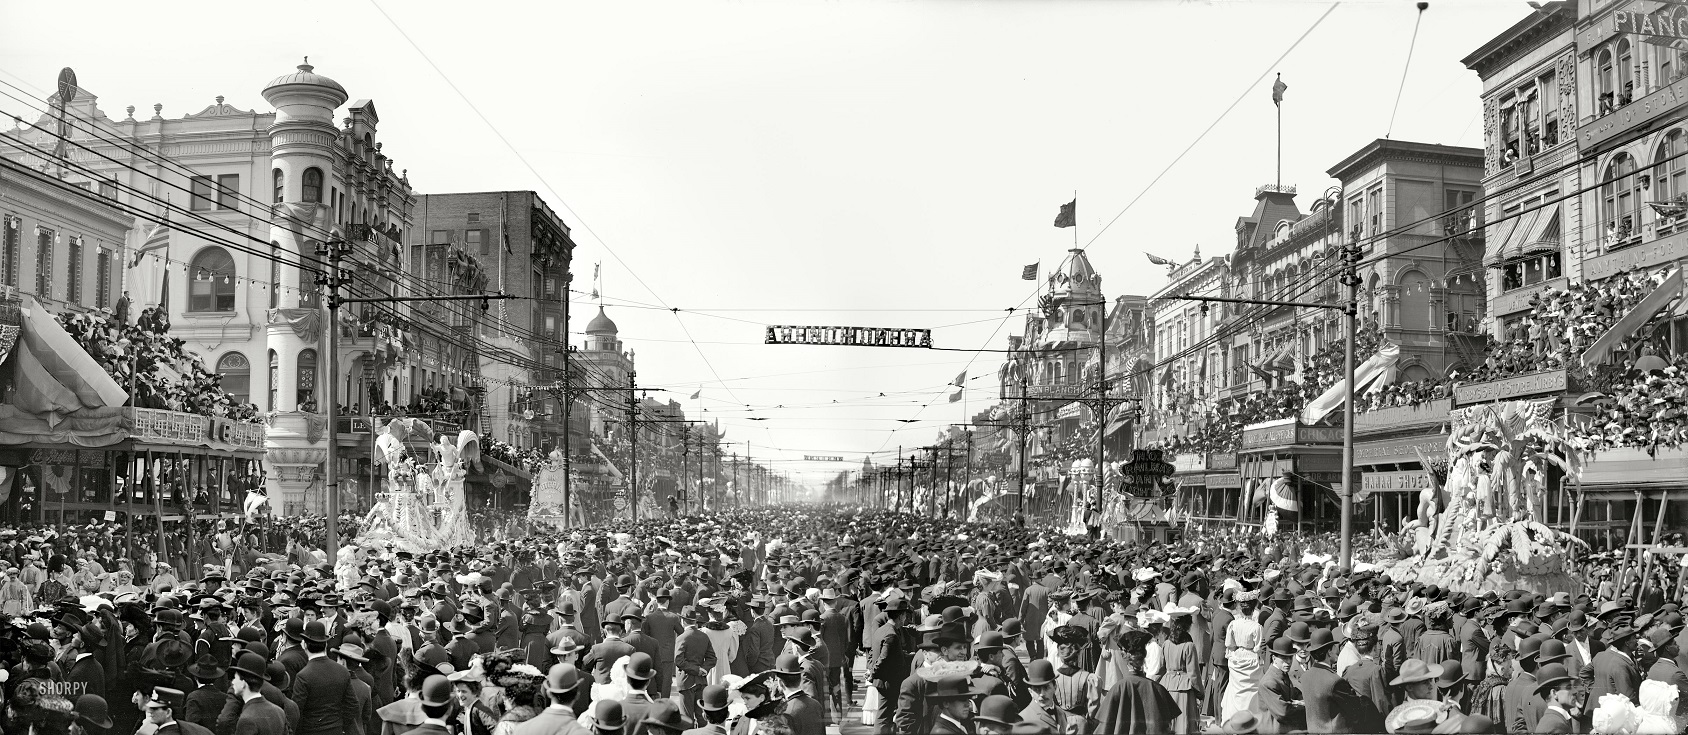 Mardi Gras 1907 Panorama.jpg